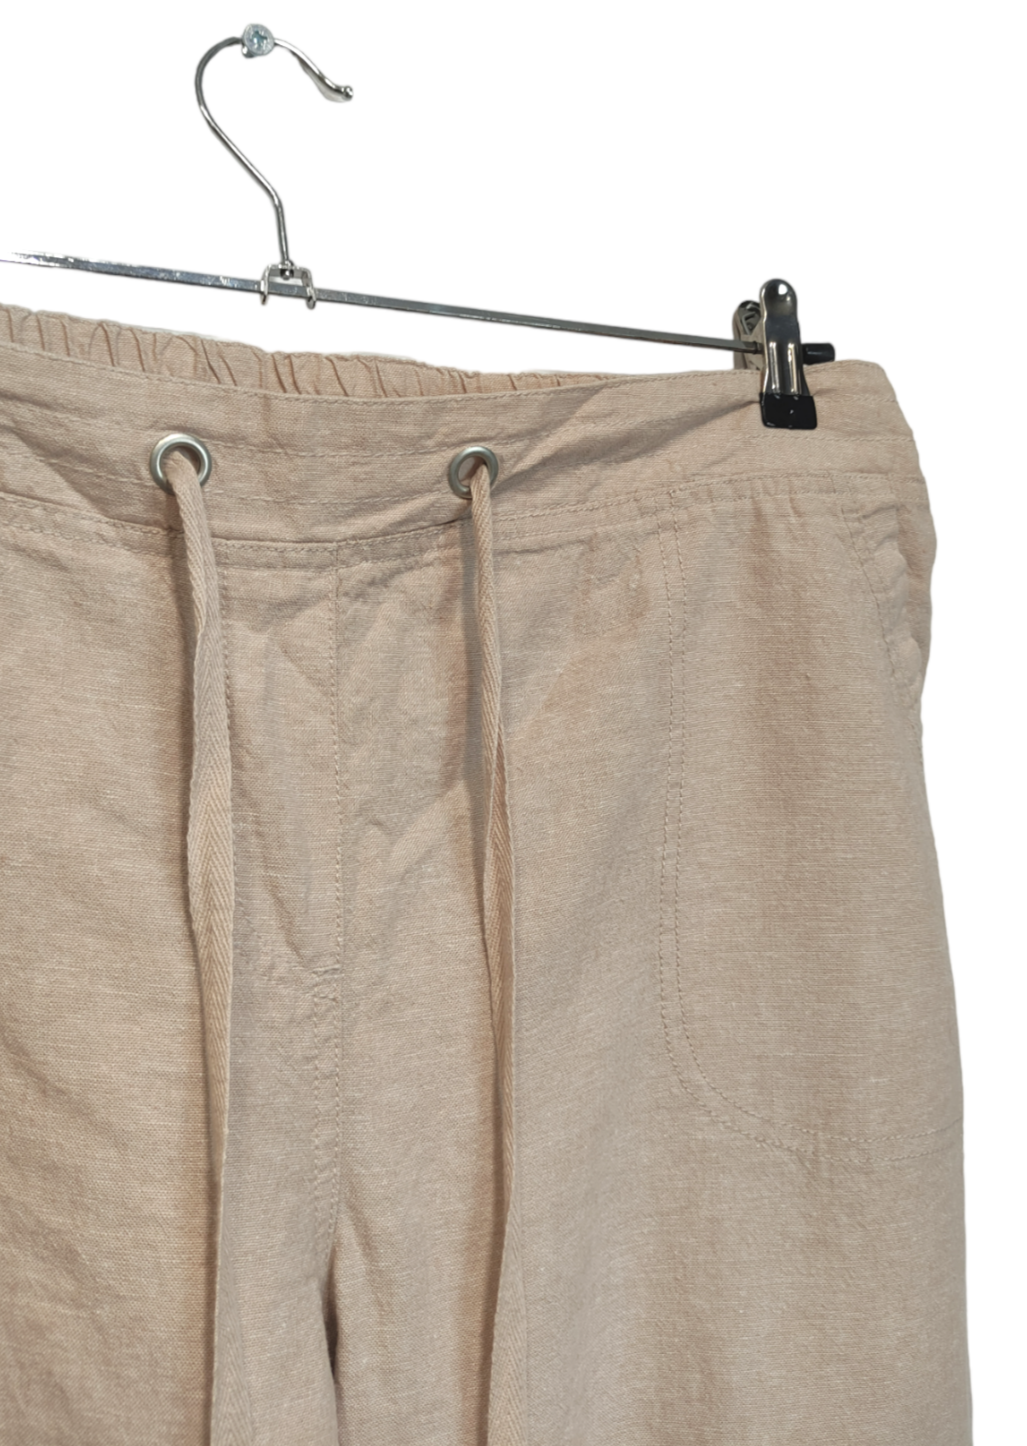 Stock, Γυναικεία Παντελόνα SUZANNE GRAE στο Χρώμα της Άμμου (XL)